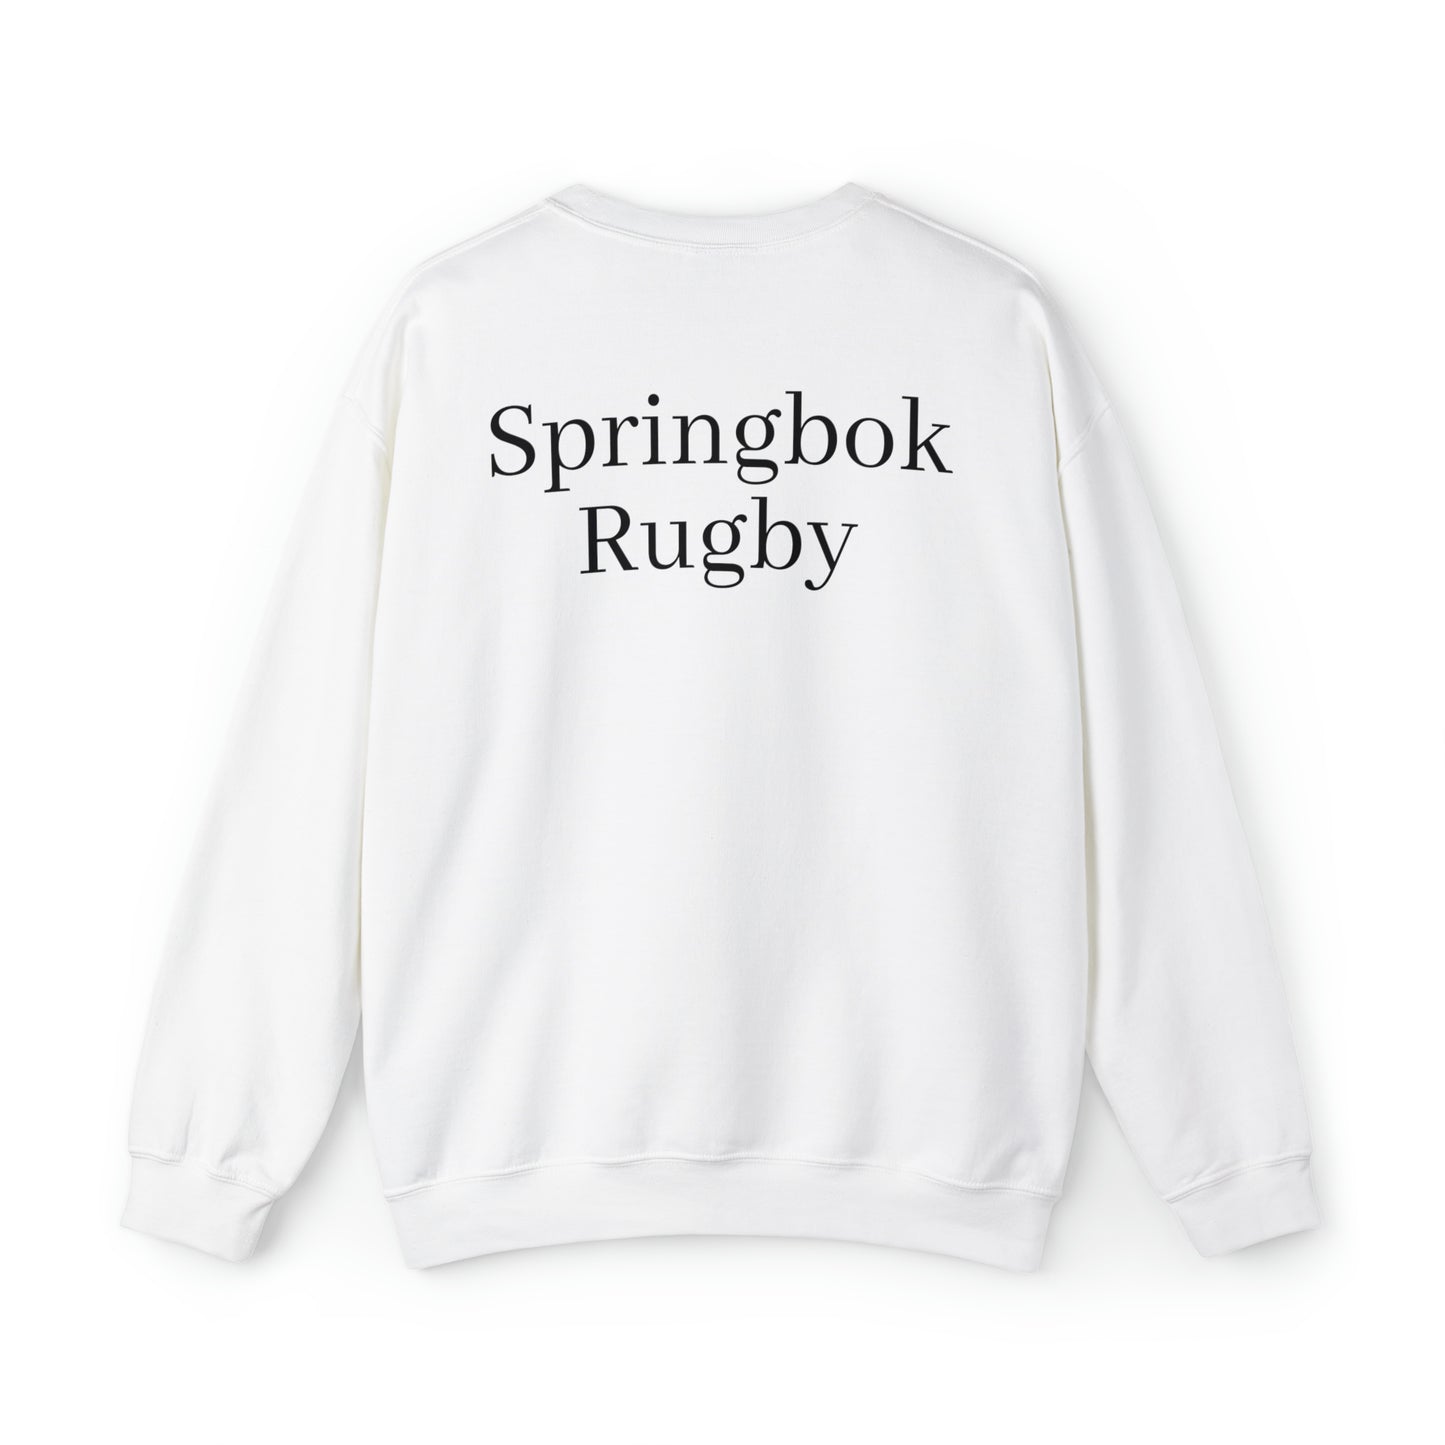 Springboks Team Photo - light sweatshirt